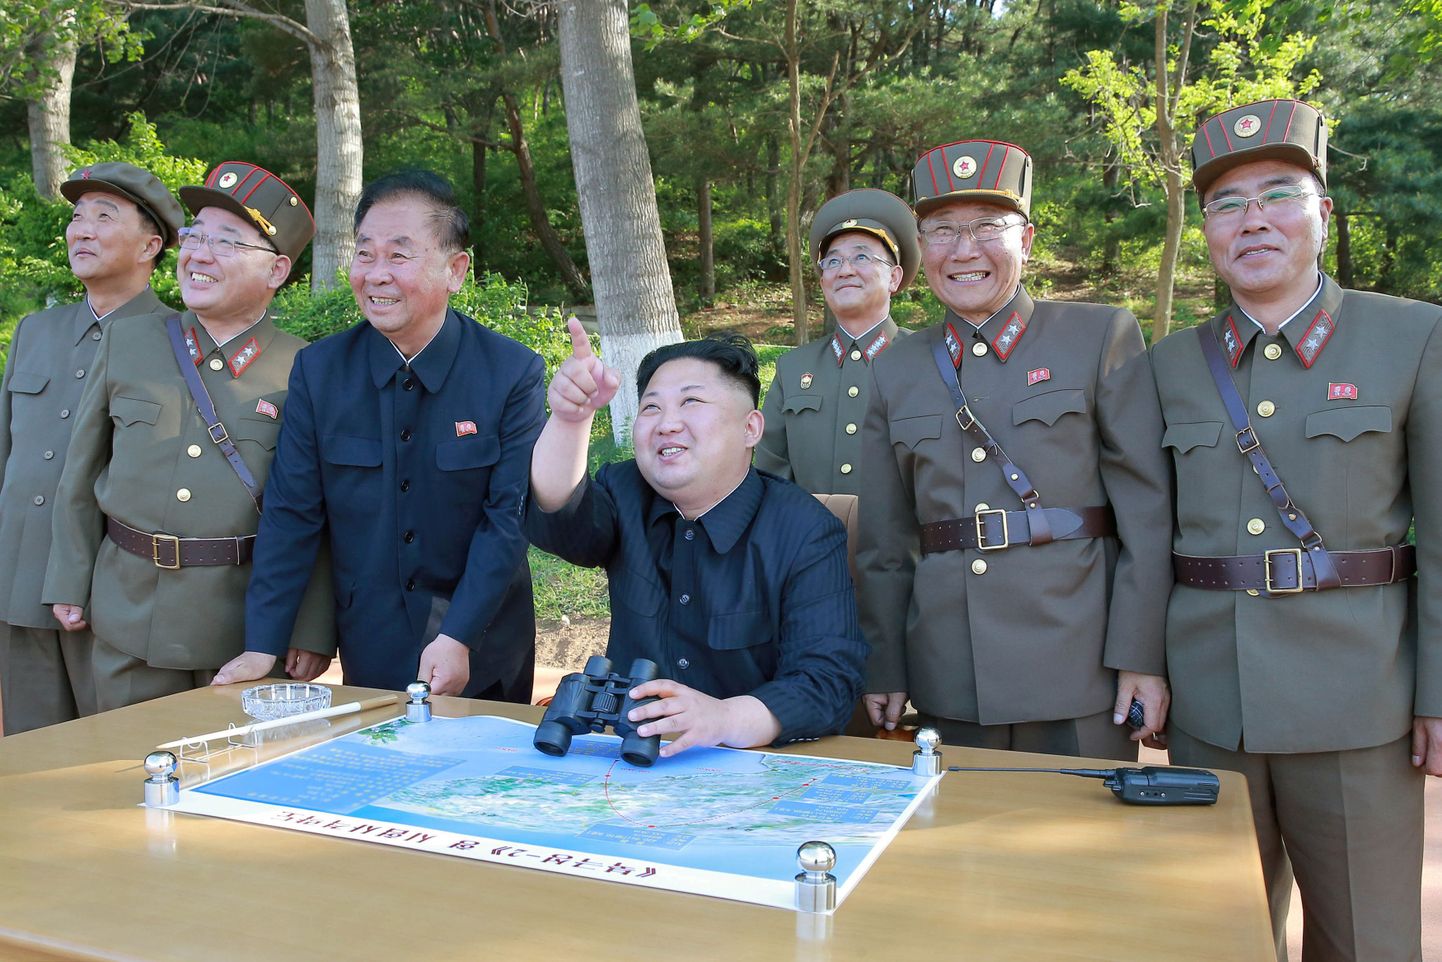 Põhja-Korea liider Kim Jong Un koos Kim Jong Siki (paremalt teine), Ri Pyong Choli (paremalt kolmas) ja Jang Chang Haga (vasakul) keskmaaraketi katsetust jälgimas.